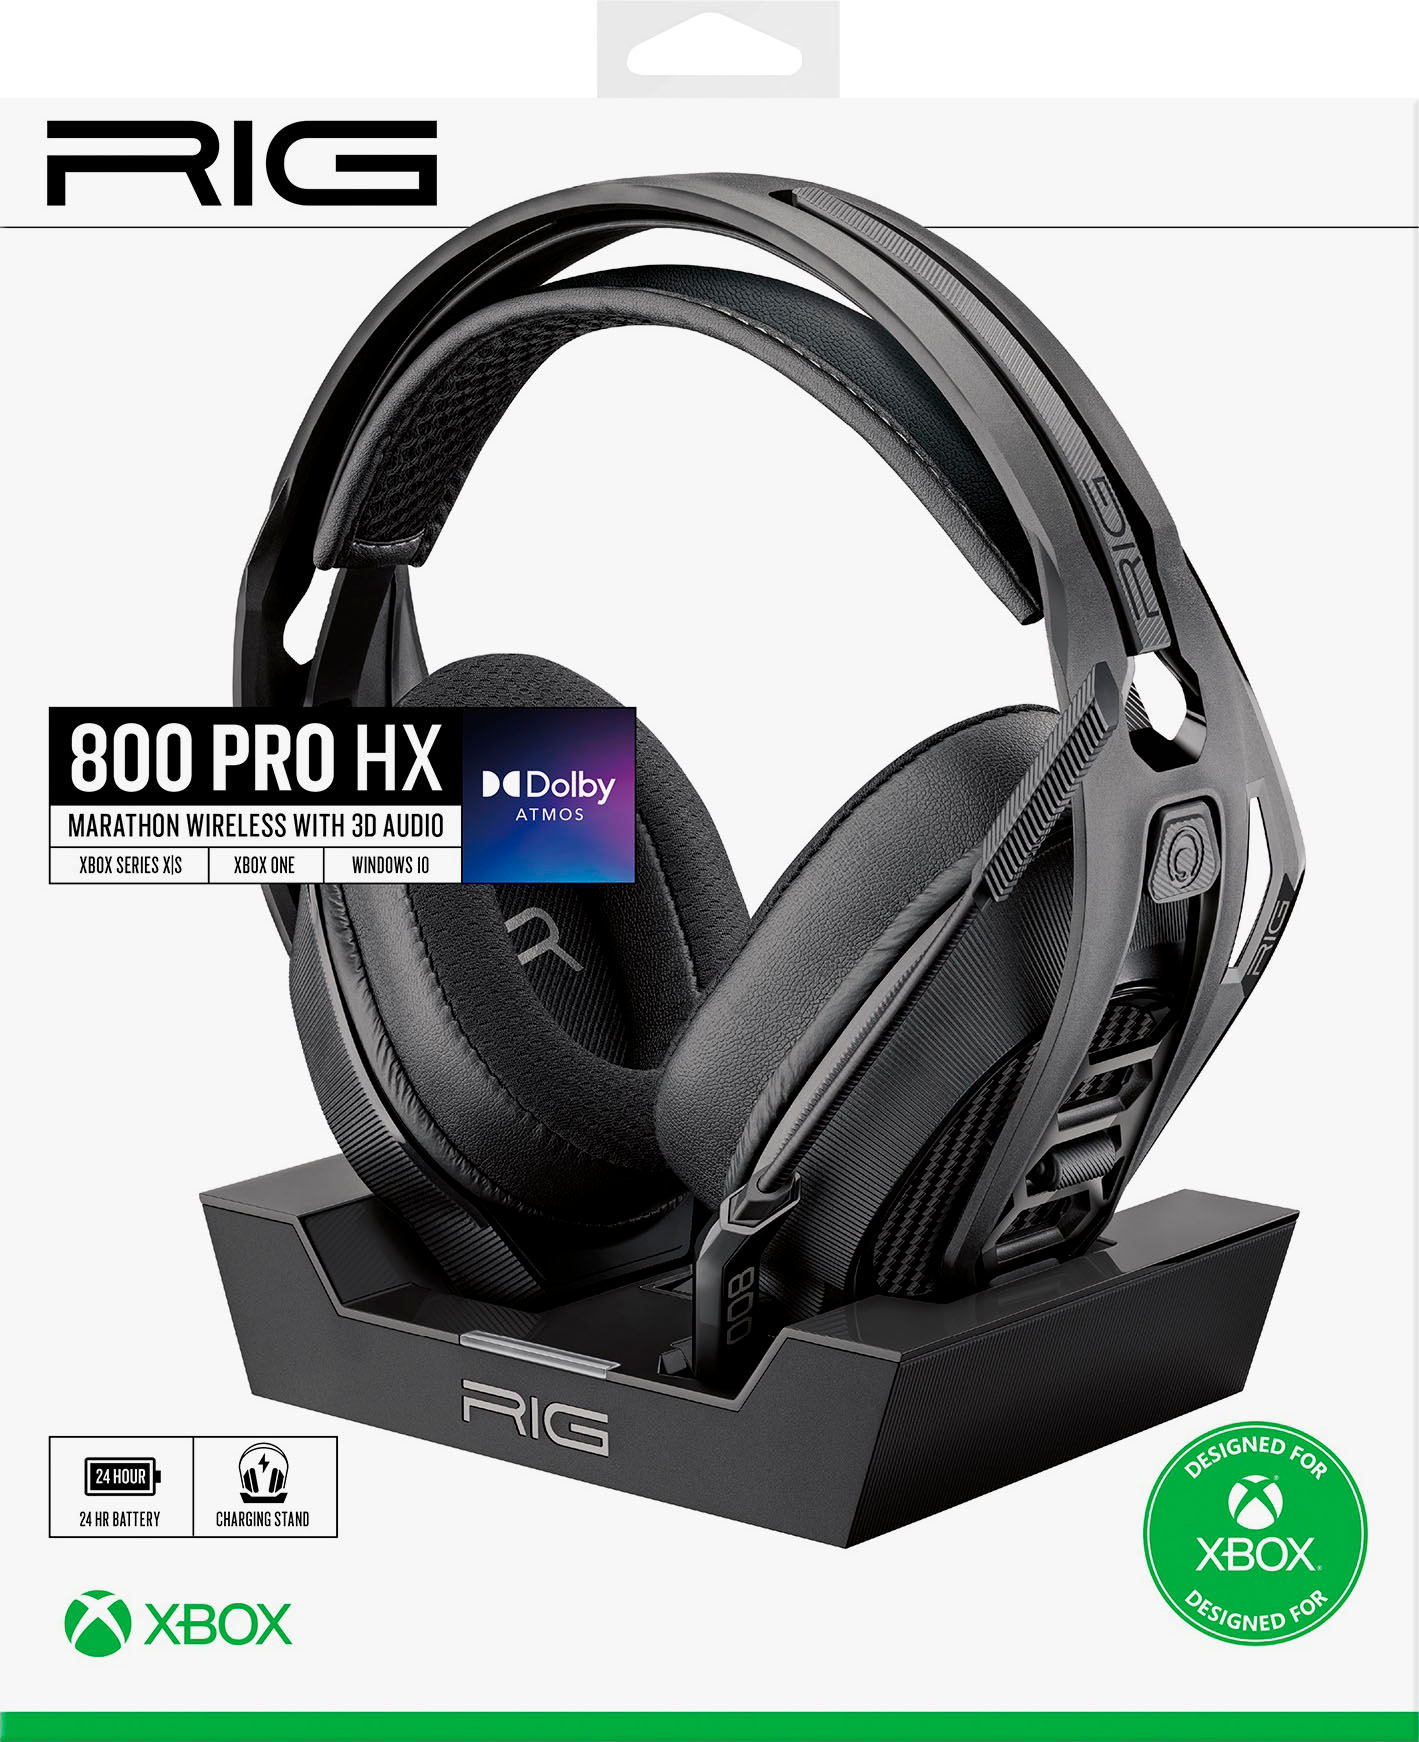 Udsigt høj krybdyr RIG 800 Pro HX Wireless Headset and Base Station for Xbox Black 10-1172-01  - Best Buy